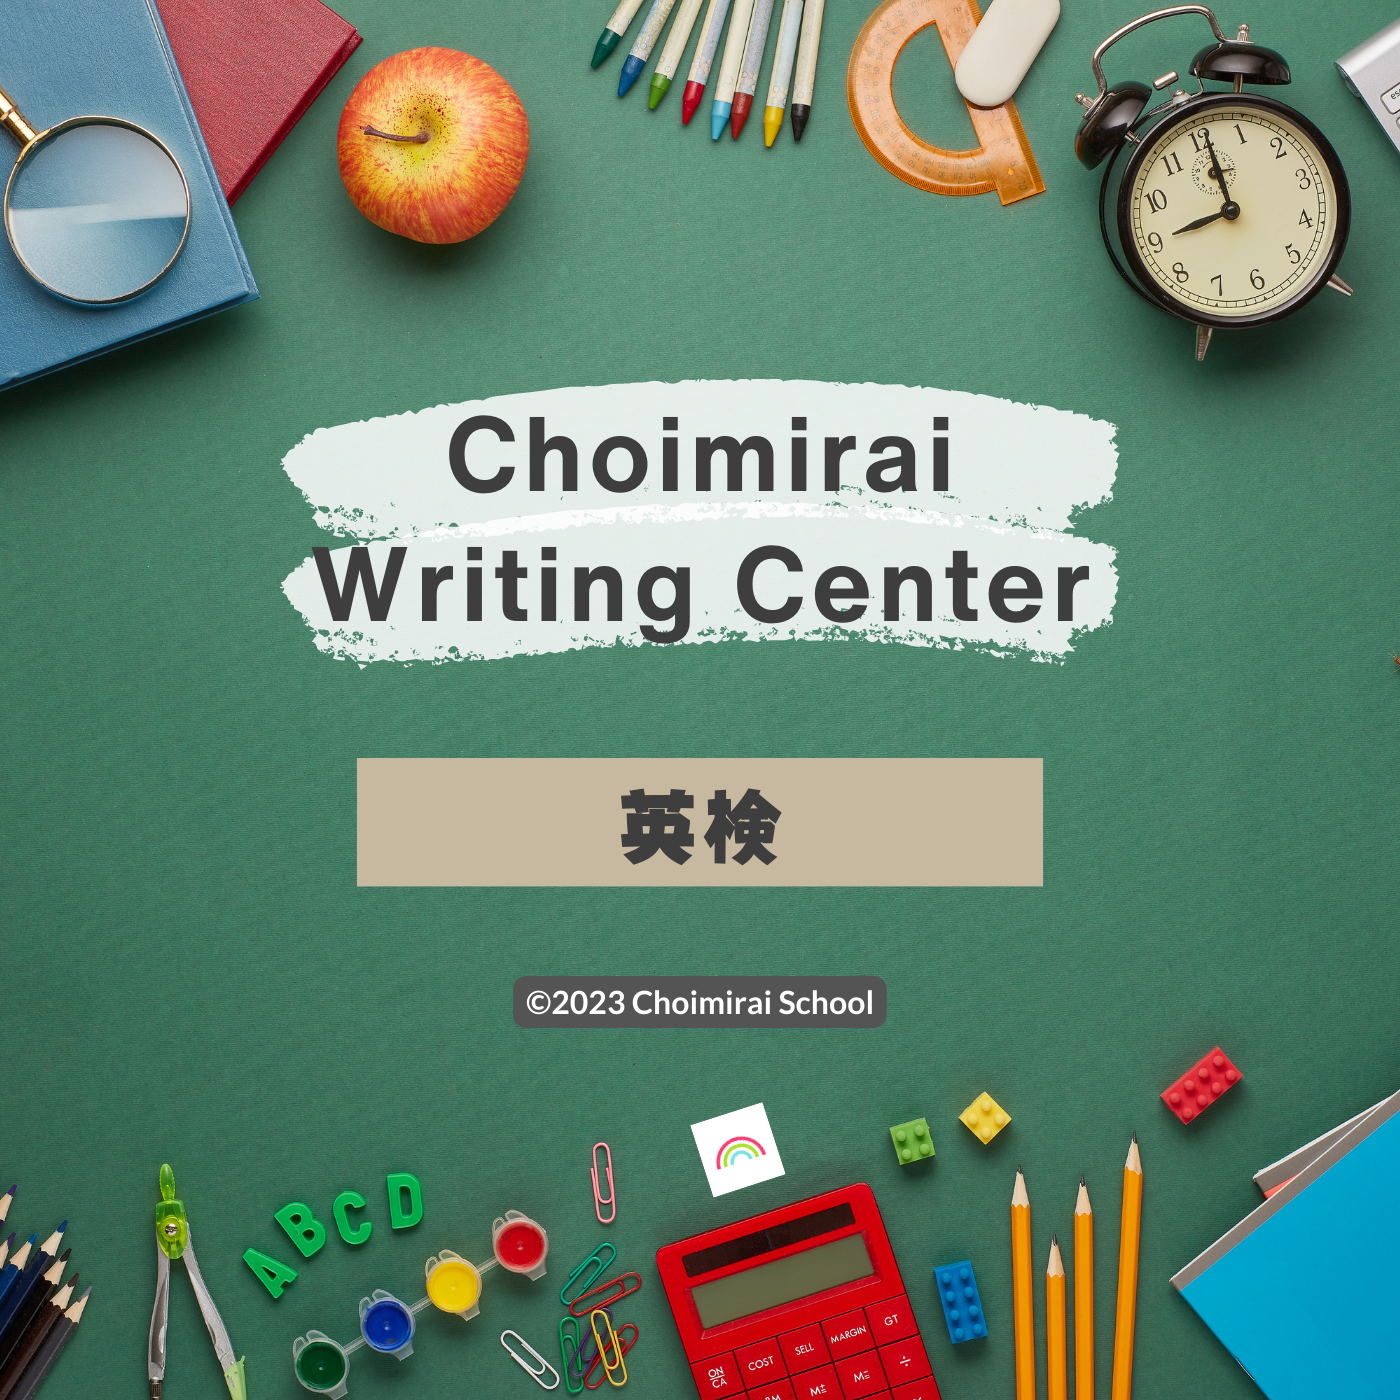 Choimirai Writing Center: 英検（3ヶ月）